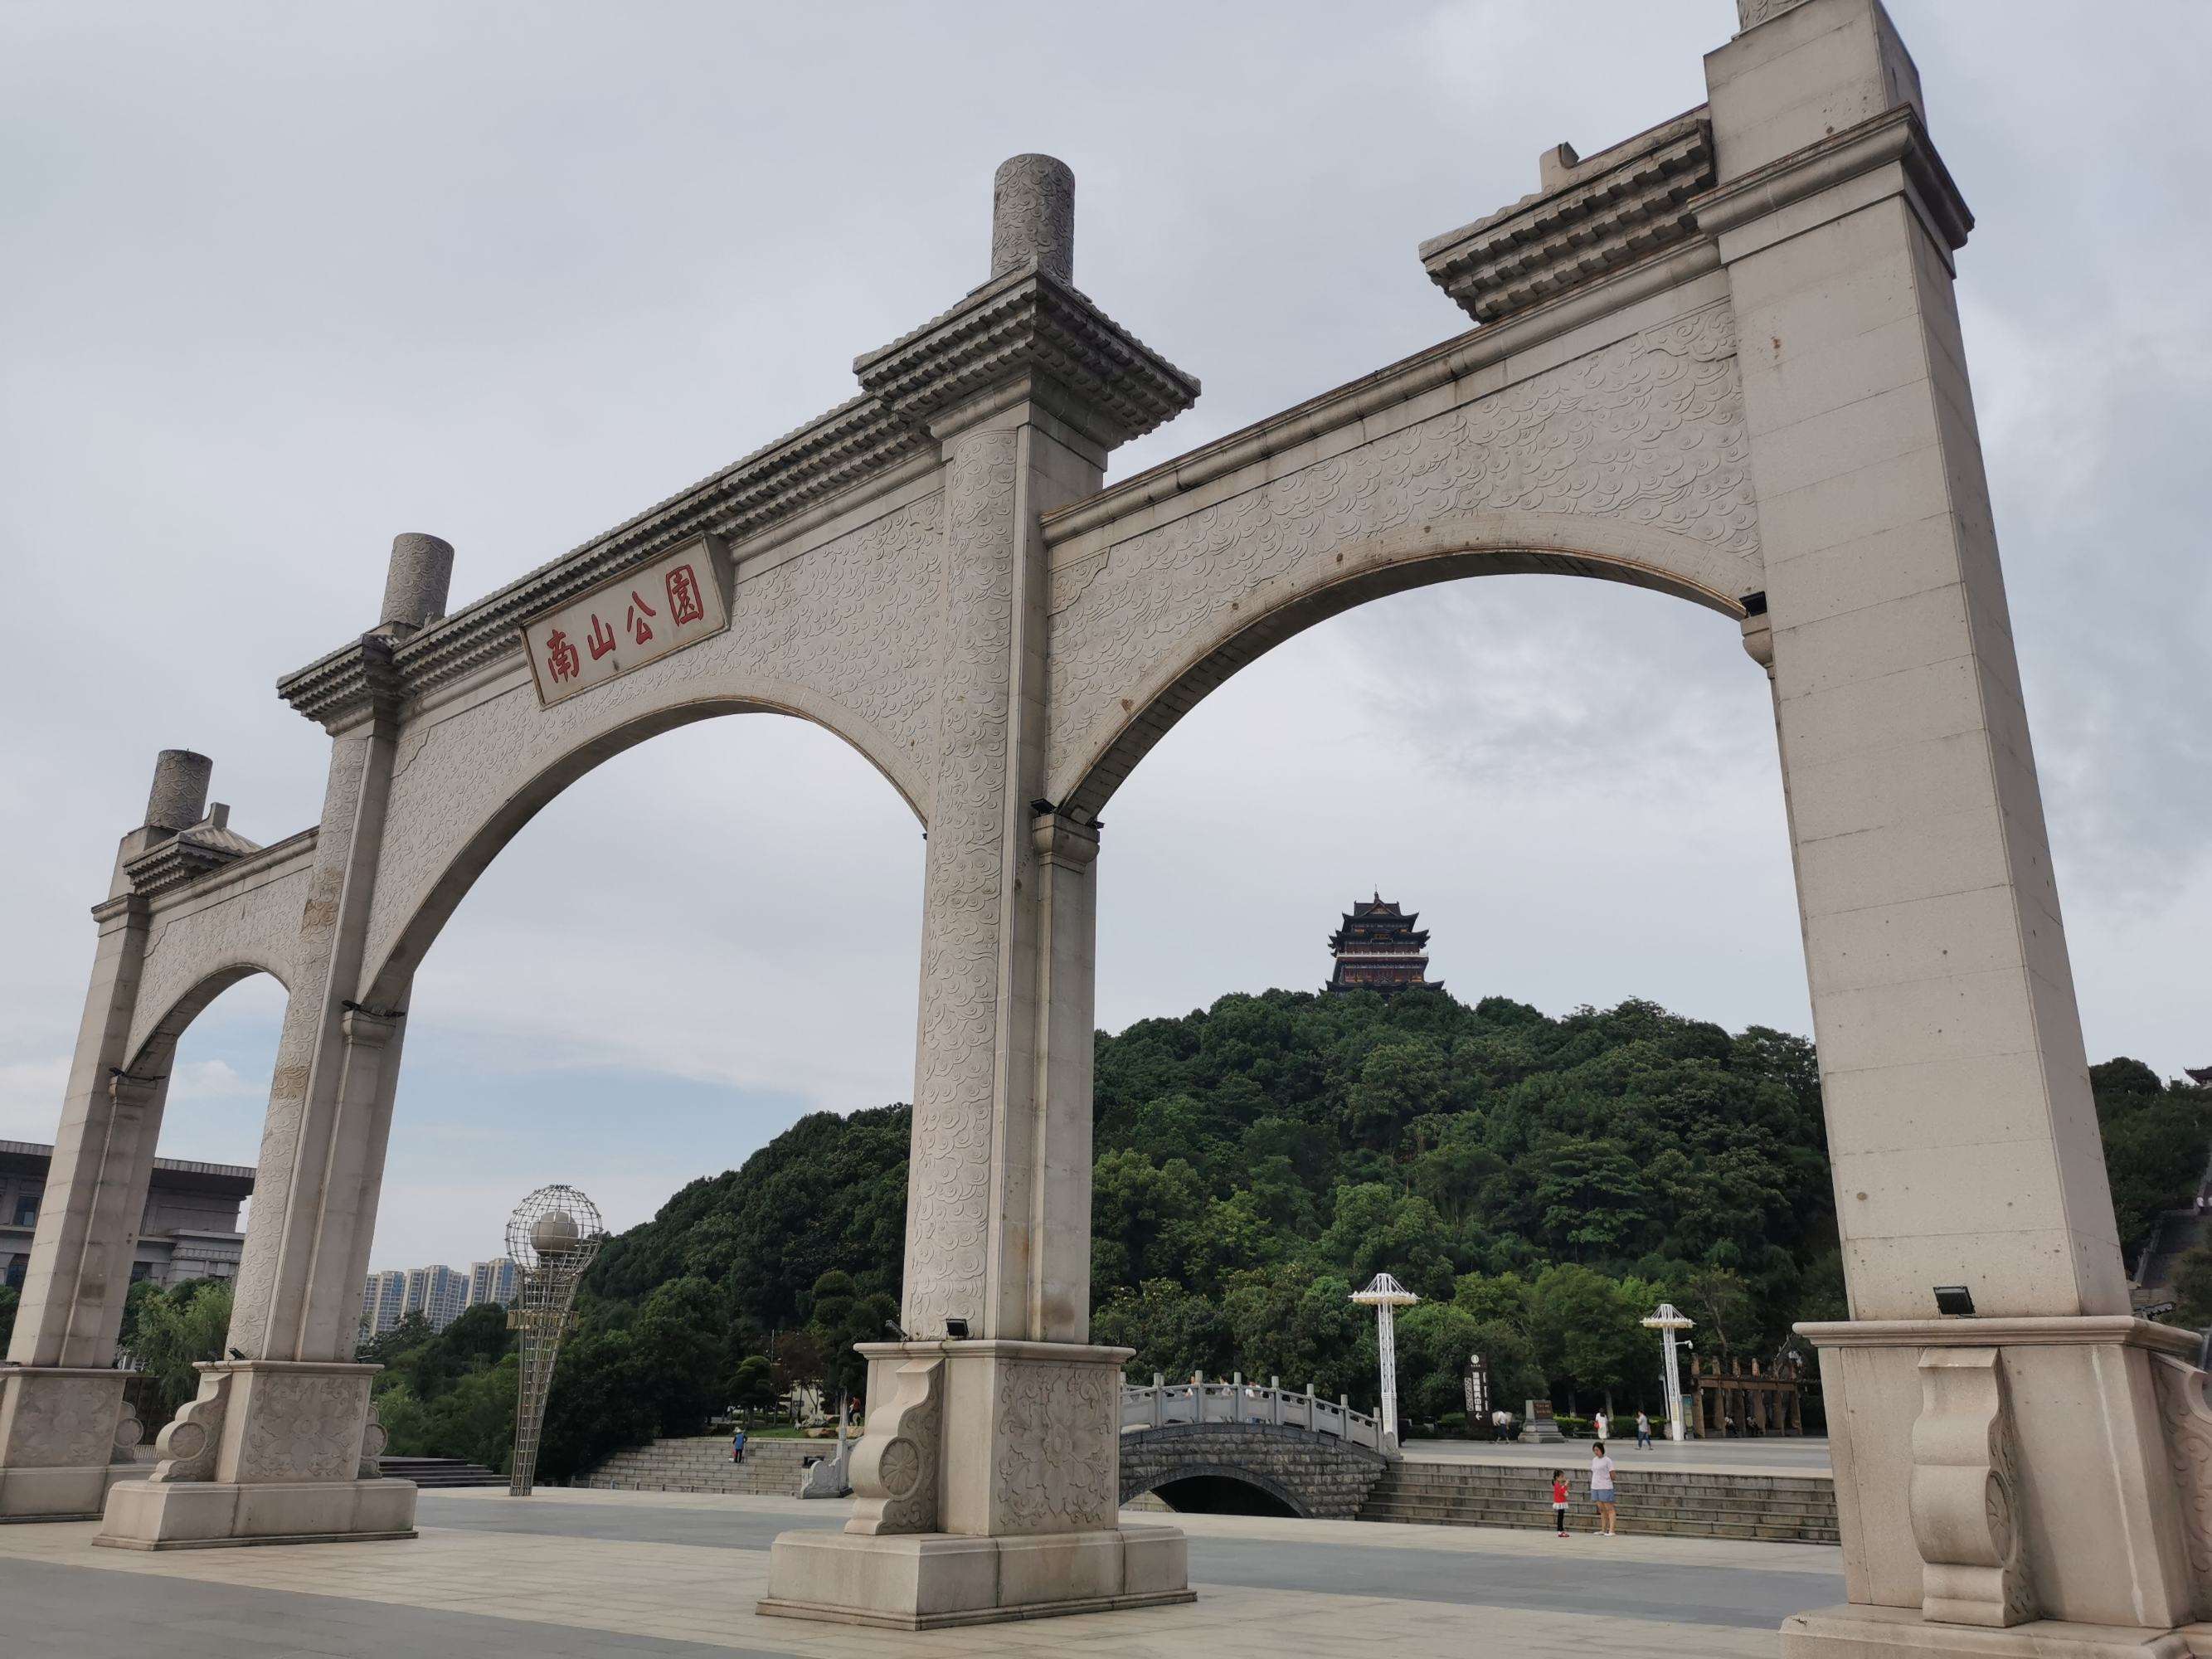 国殇墓园是中国最震撼人心的烈士陵园吗？ - 知乎